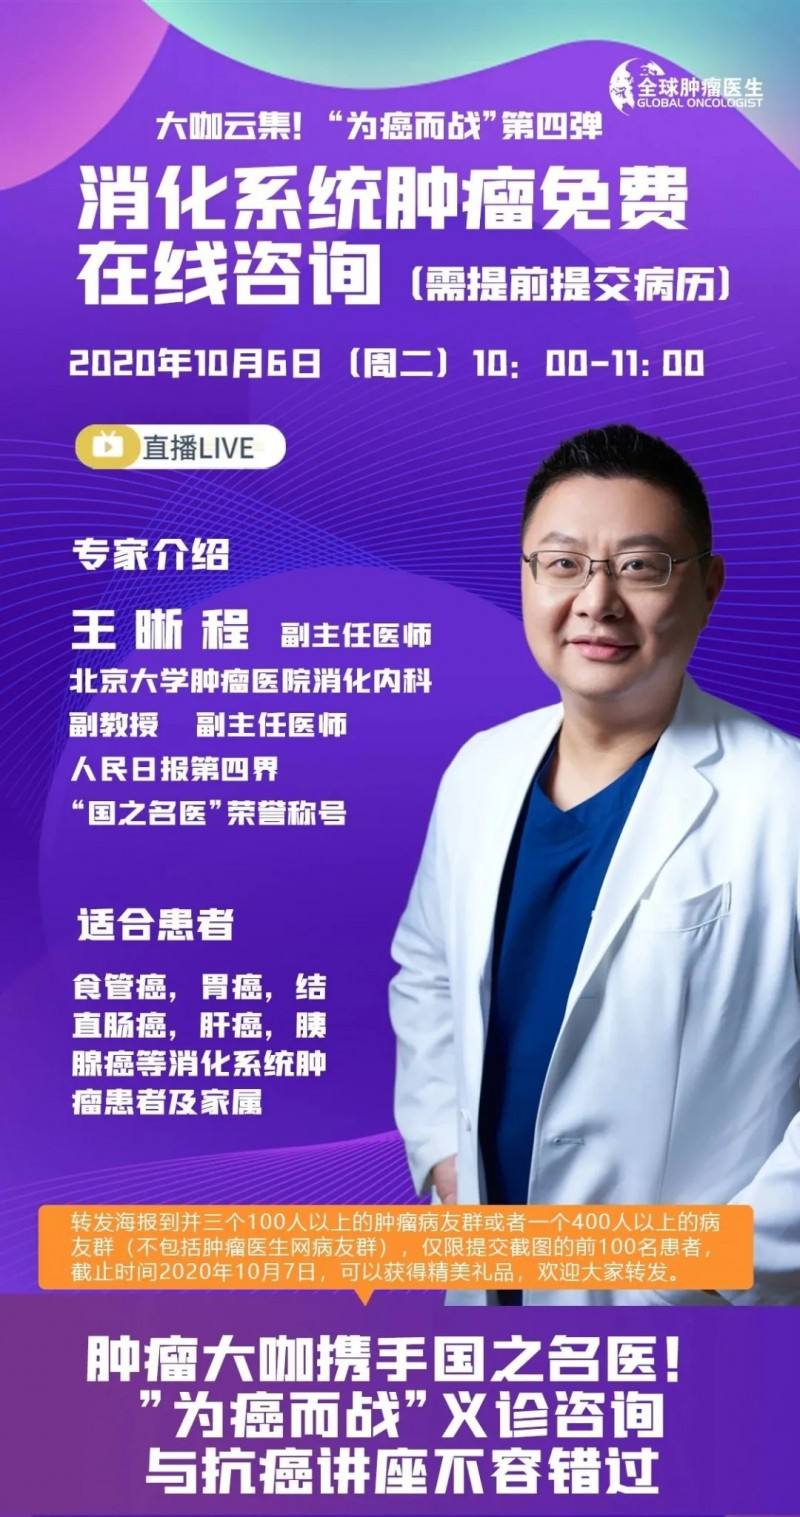 关于北京大学肿瘤医院网上代挂专家号，在线客服为您解答的信息